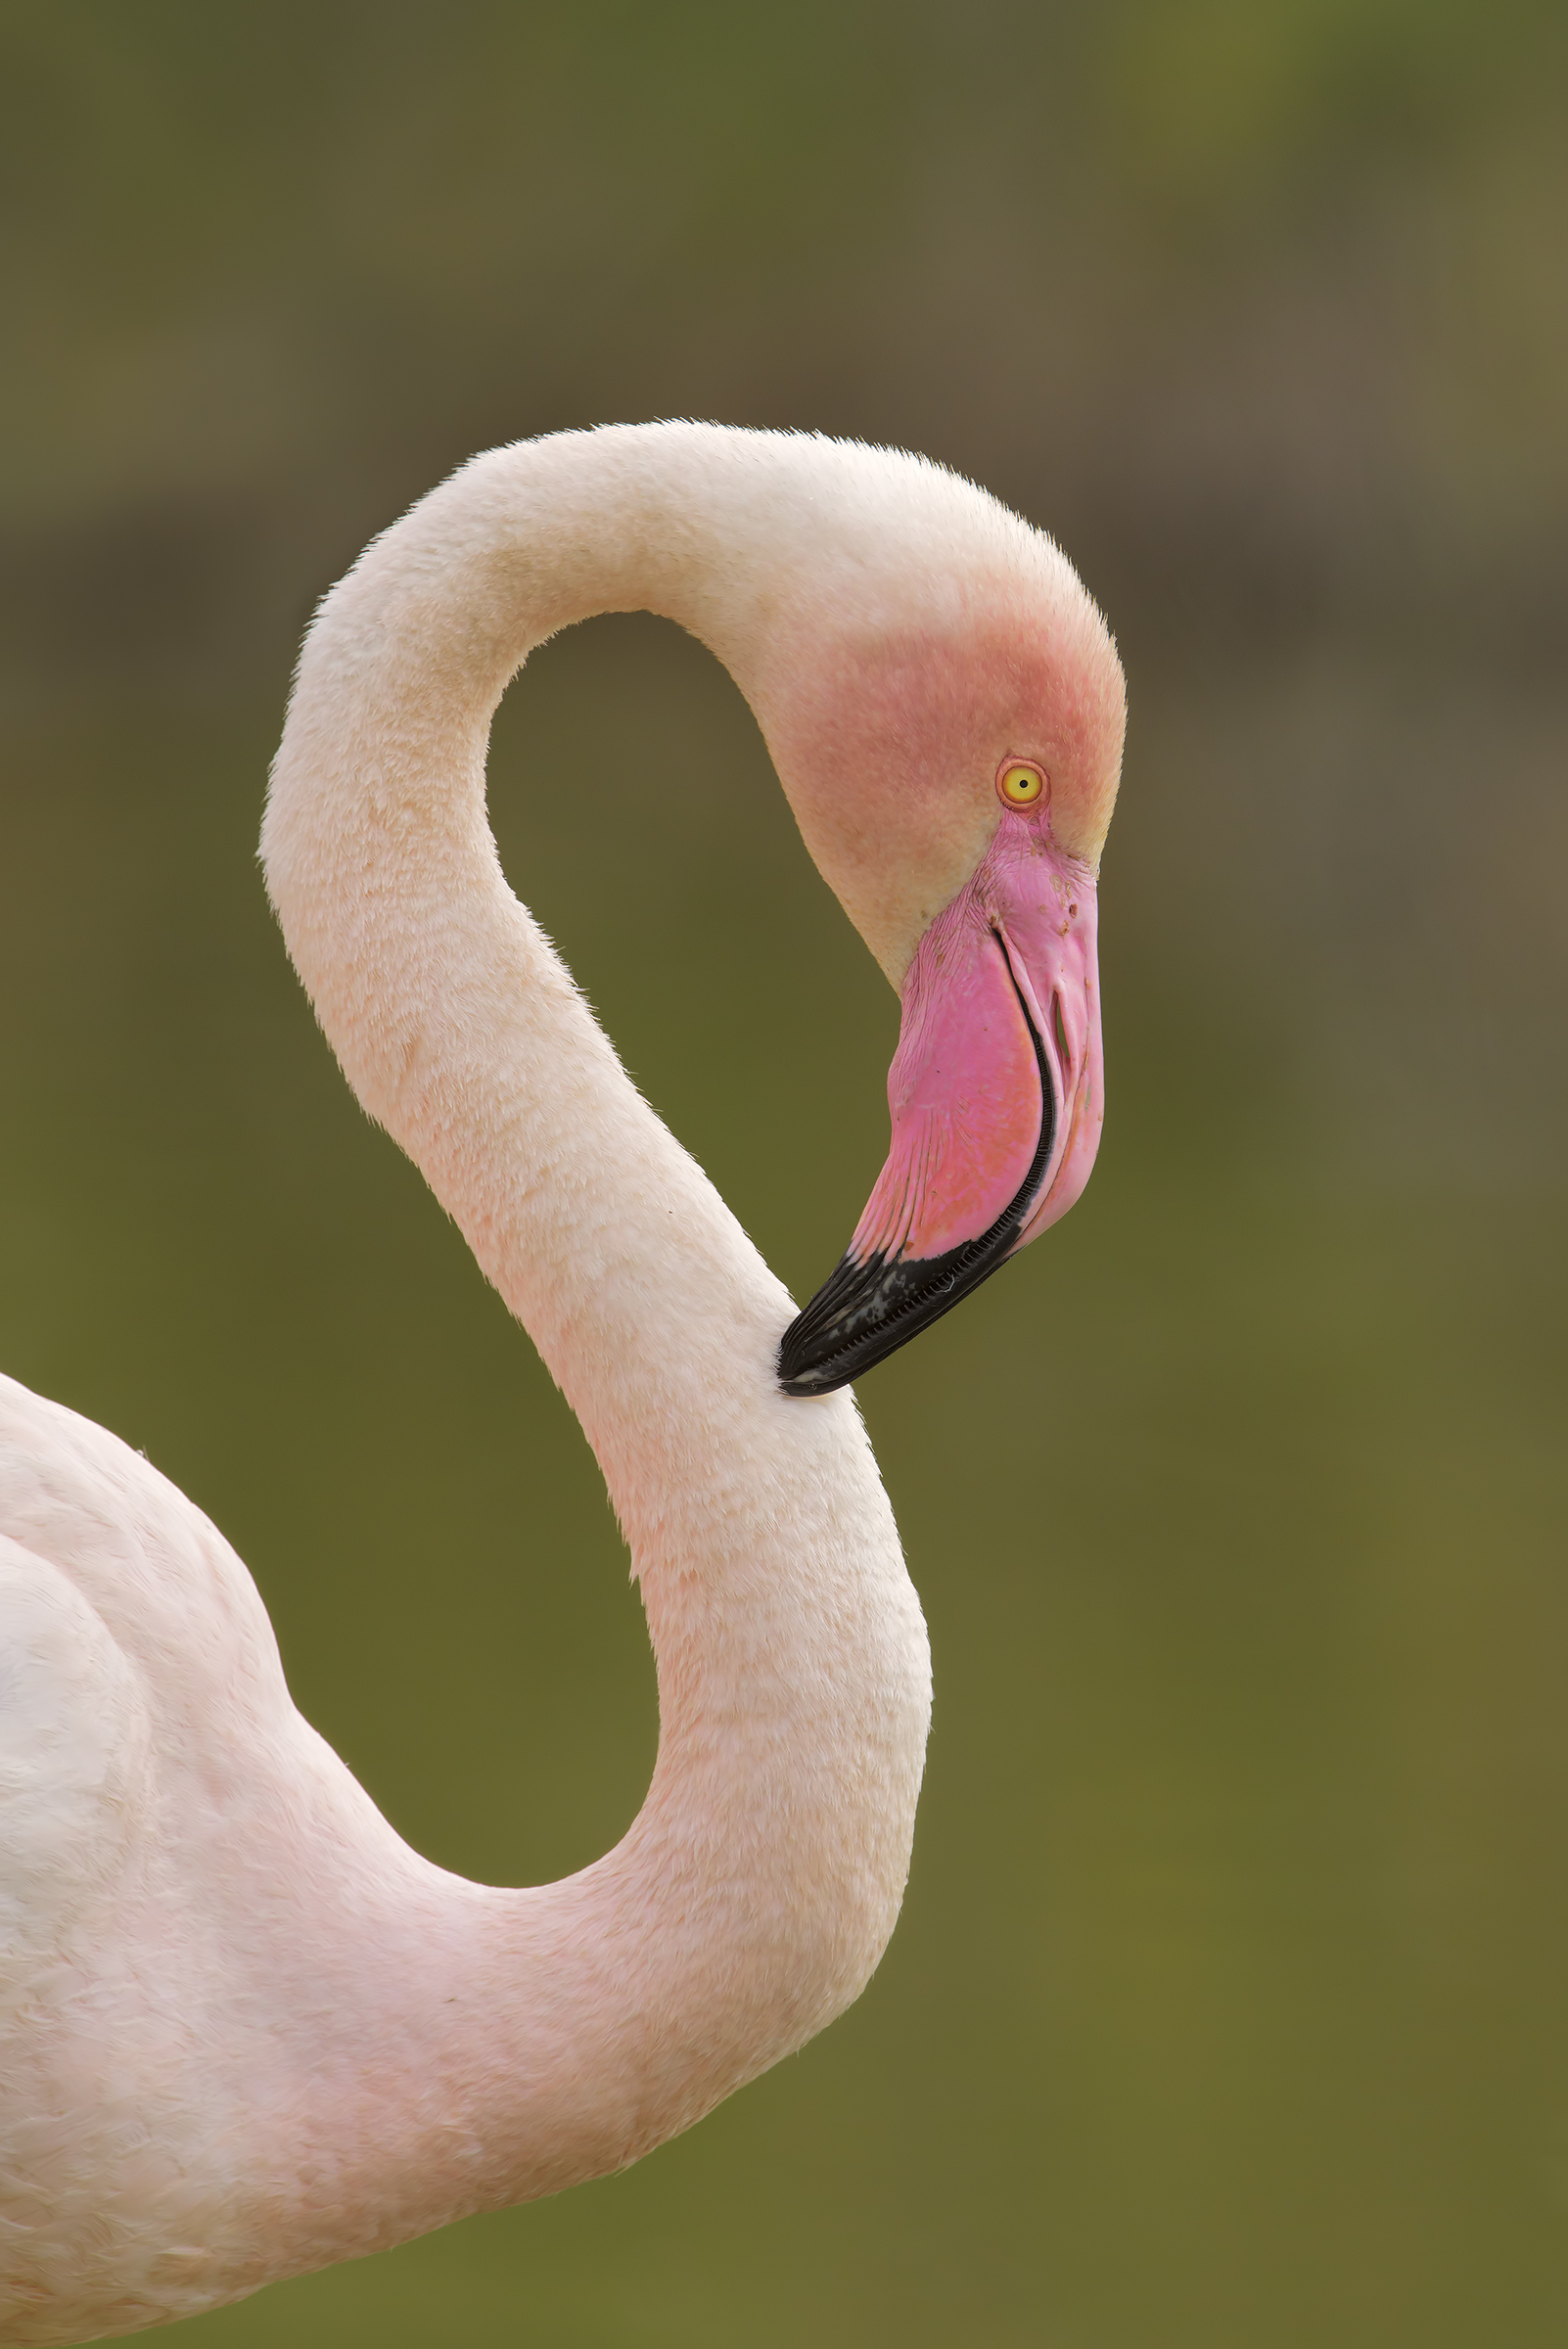 S of Flamingo...